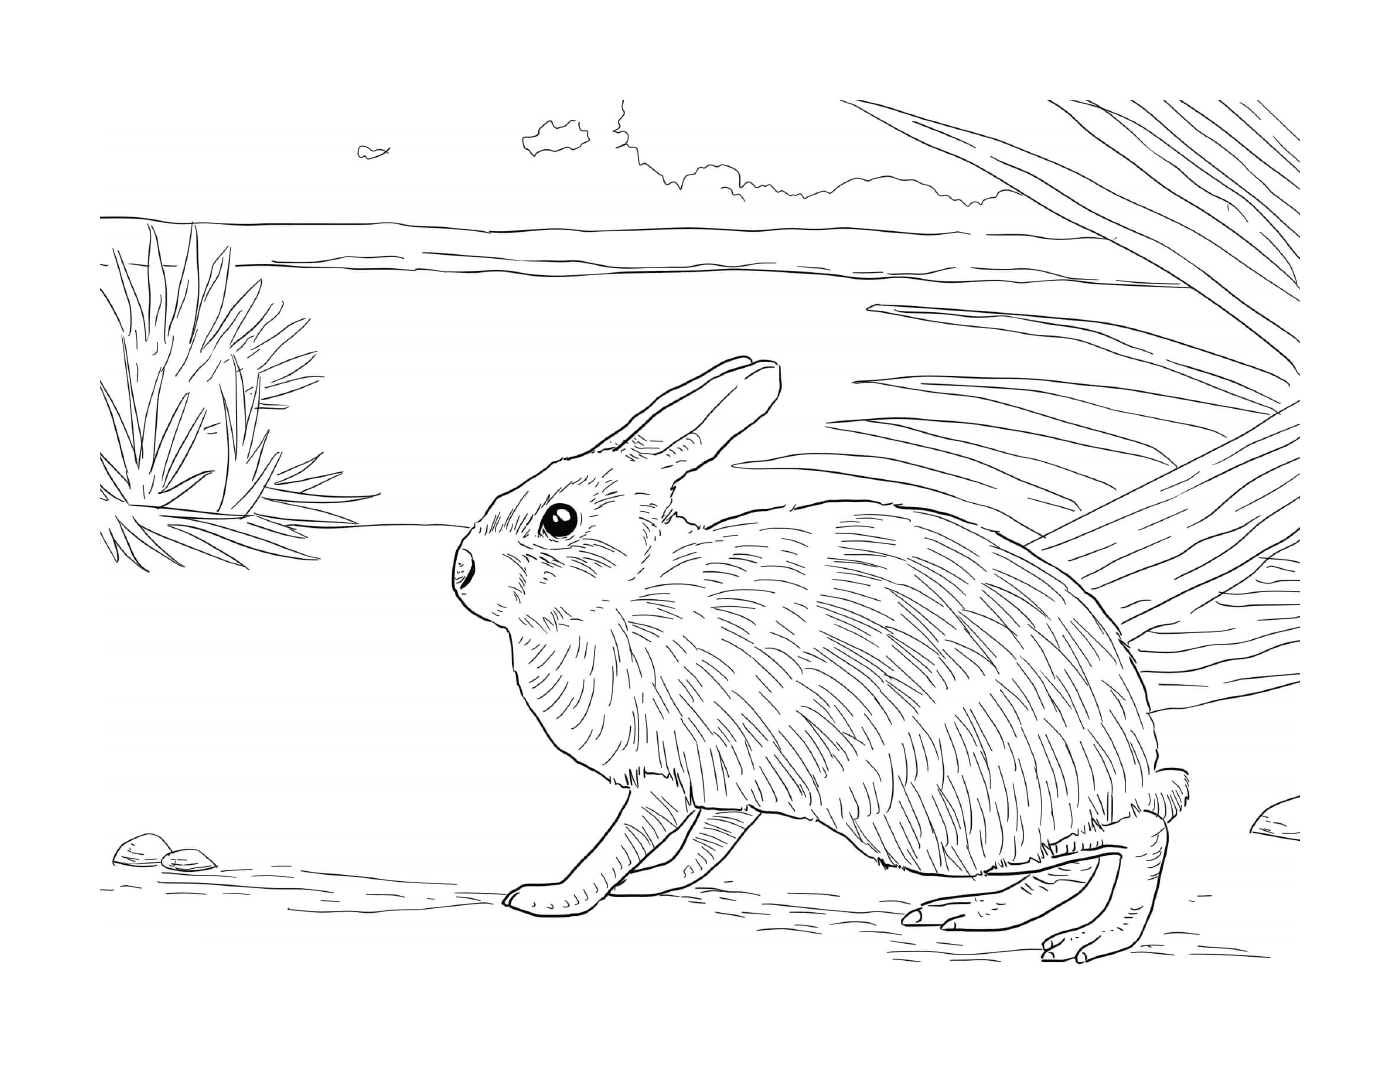  在自然环境中现实的兔子 